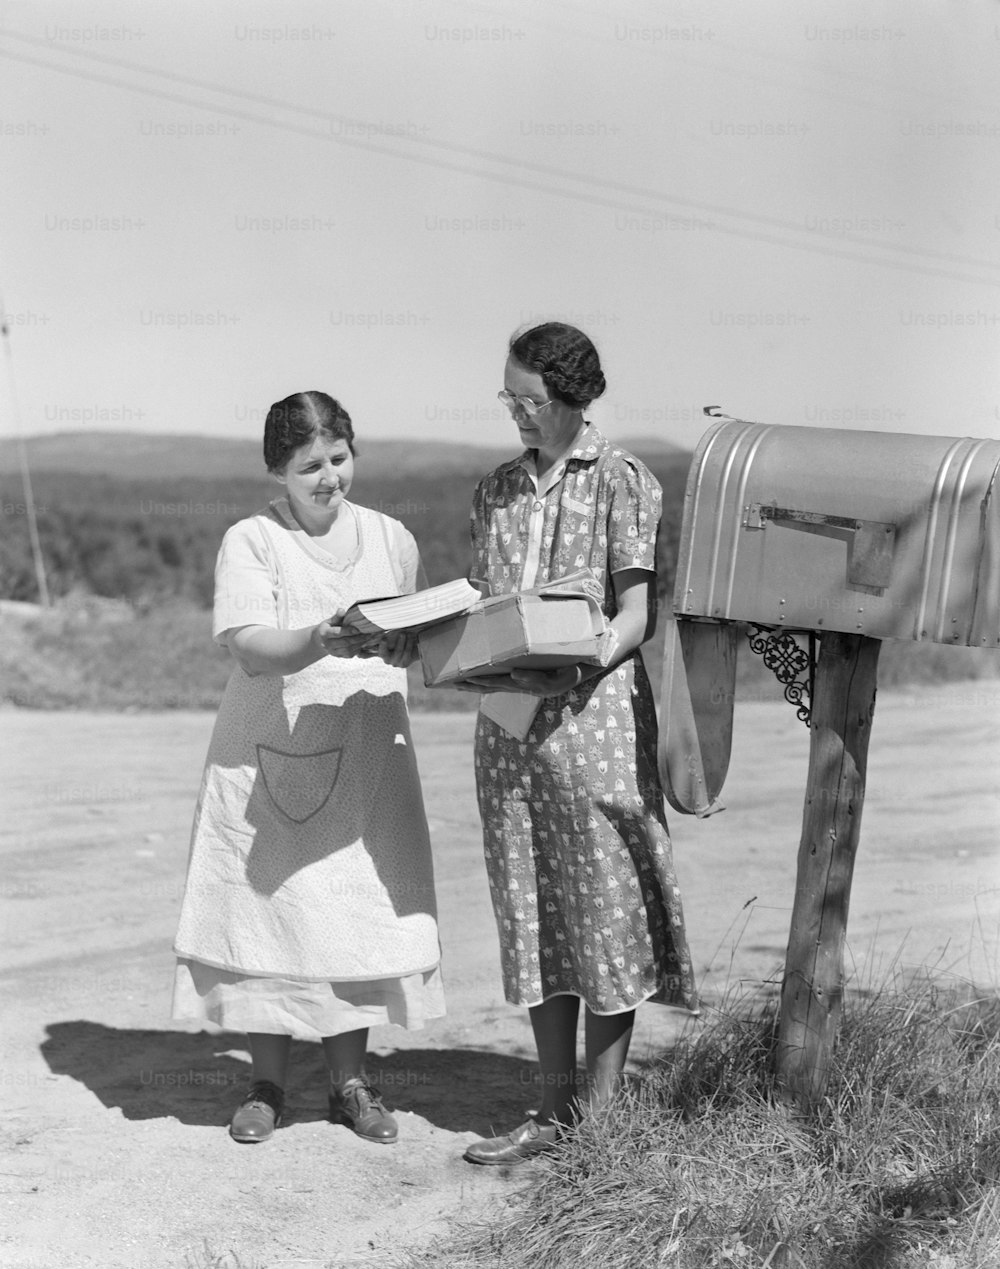 ESTADOS UNIDOS - POR VOLTA DE 1940: Duas mulheres coletam correspondências da caixa de correio do país.